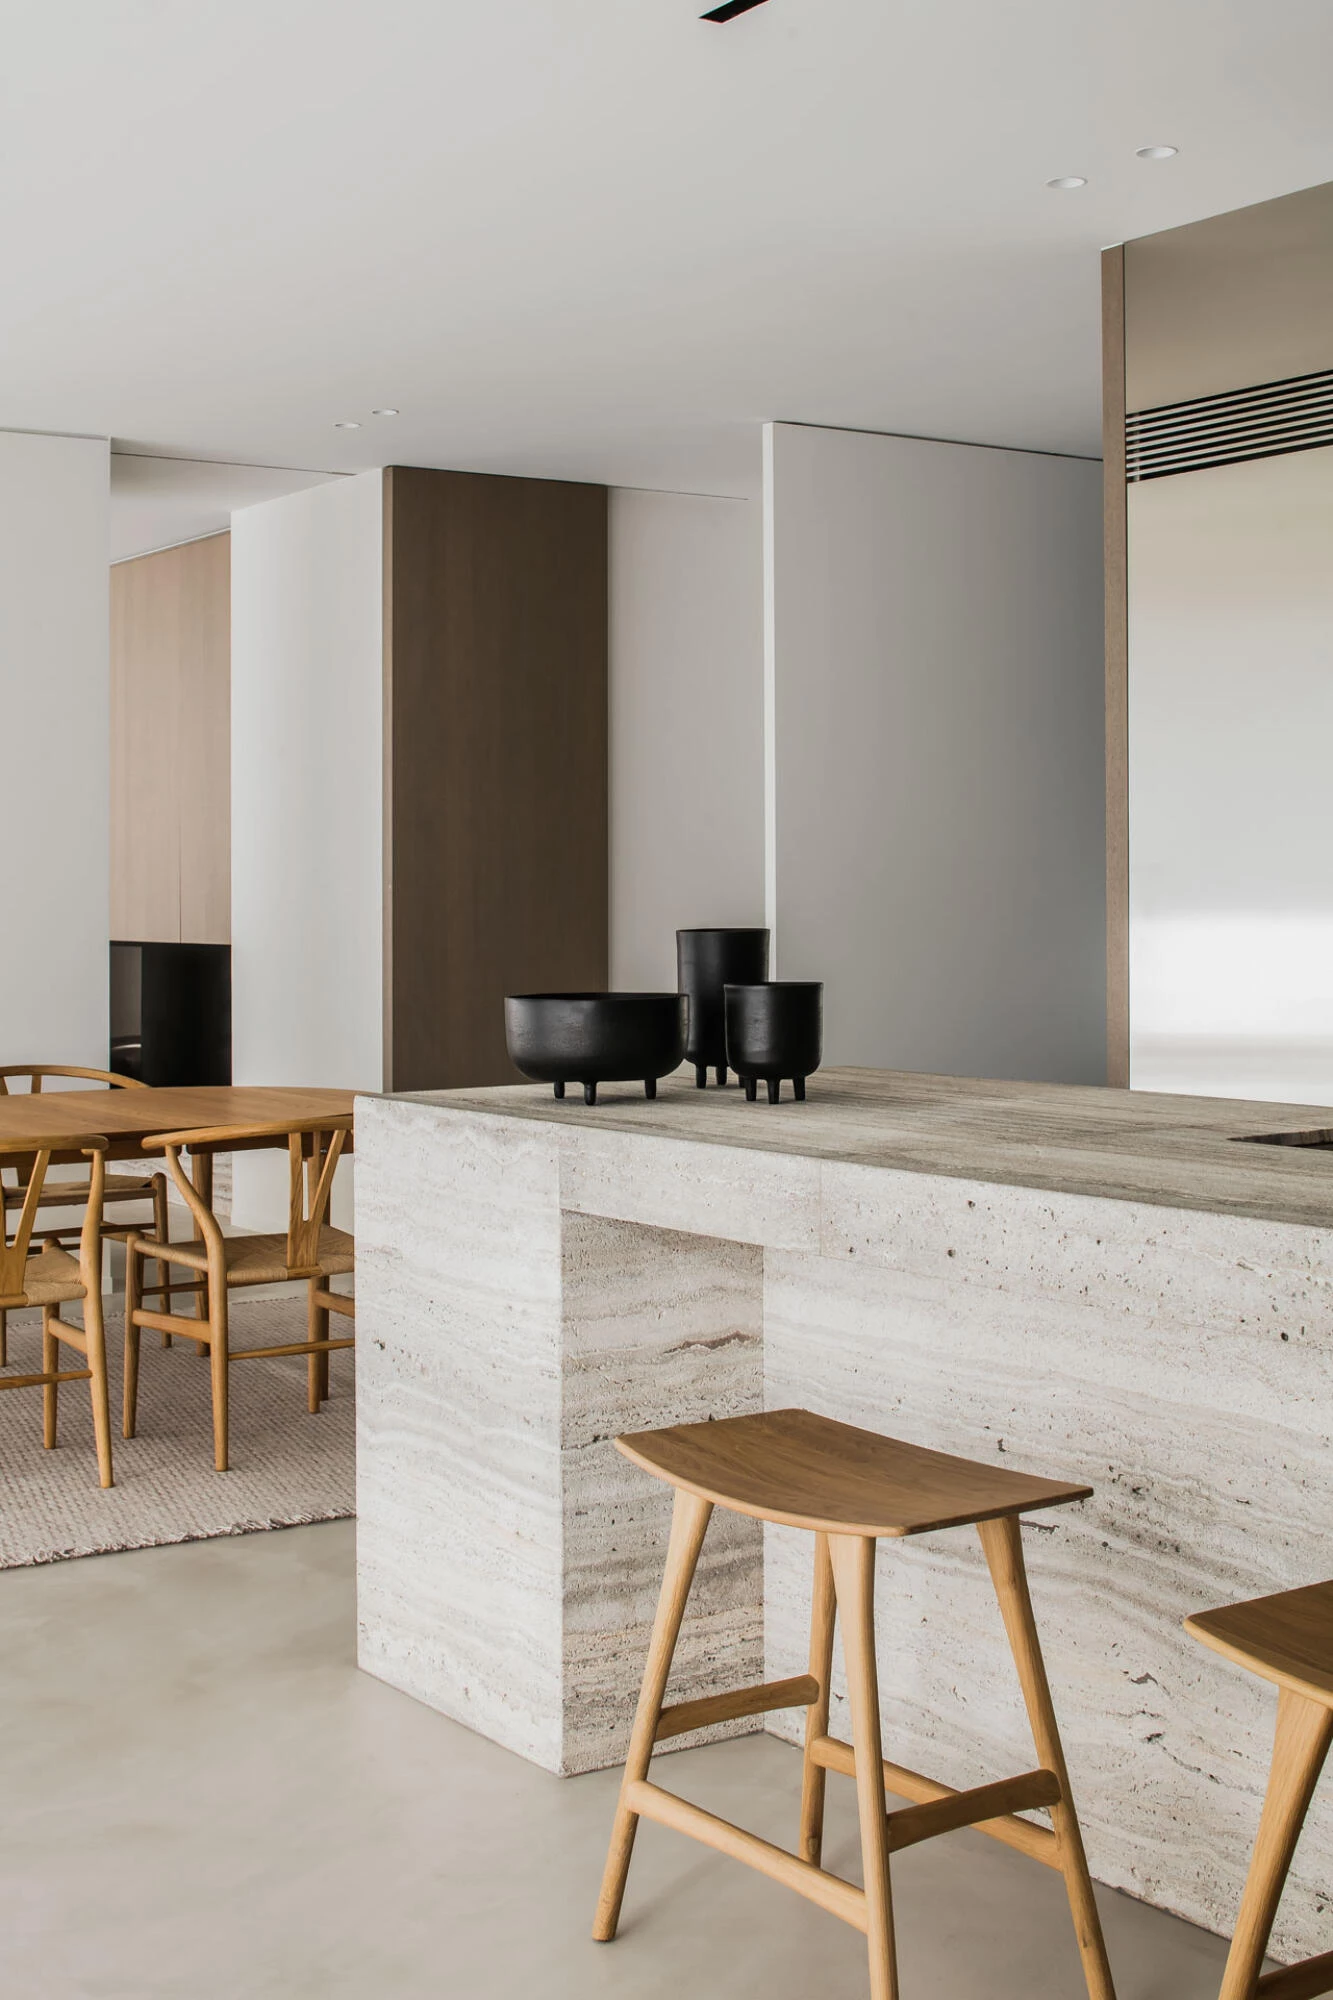 Thalostuc stuc vloer in minimalistische keuken binnen interieur van Pieter Vanrenterghem